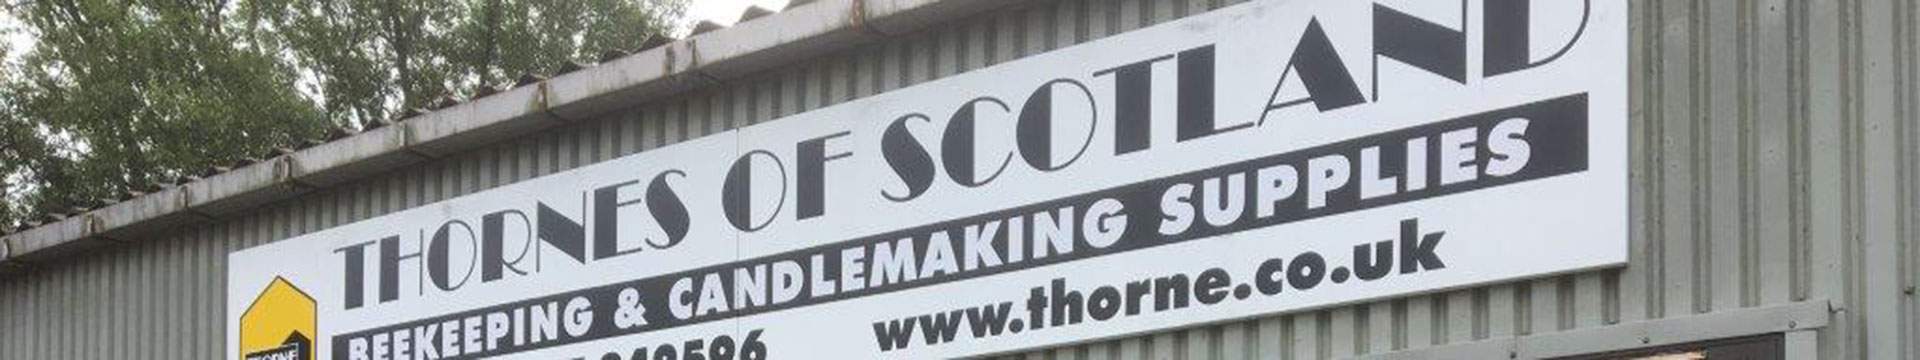 Thorne-scotland-banner-1920x360.jpg